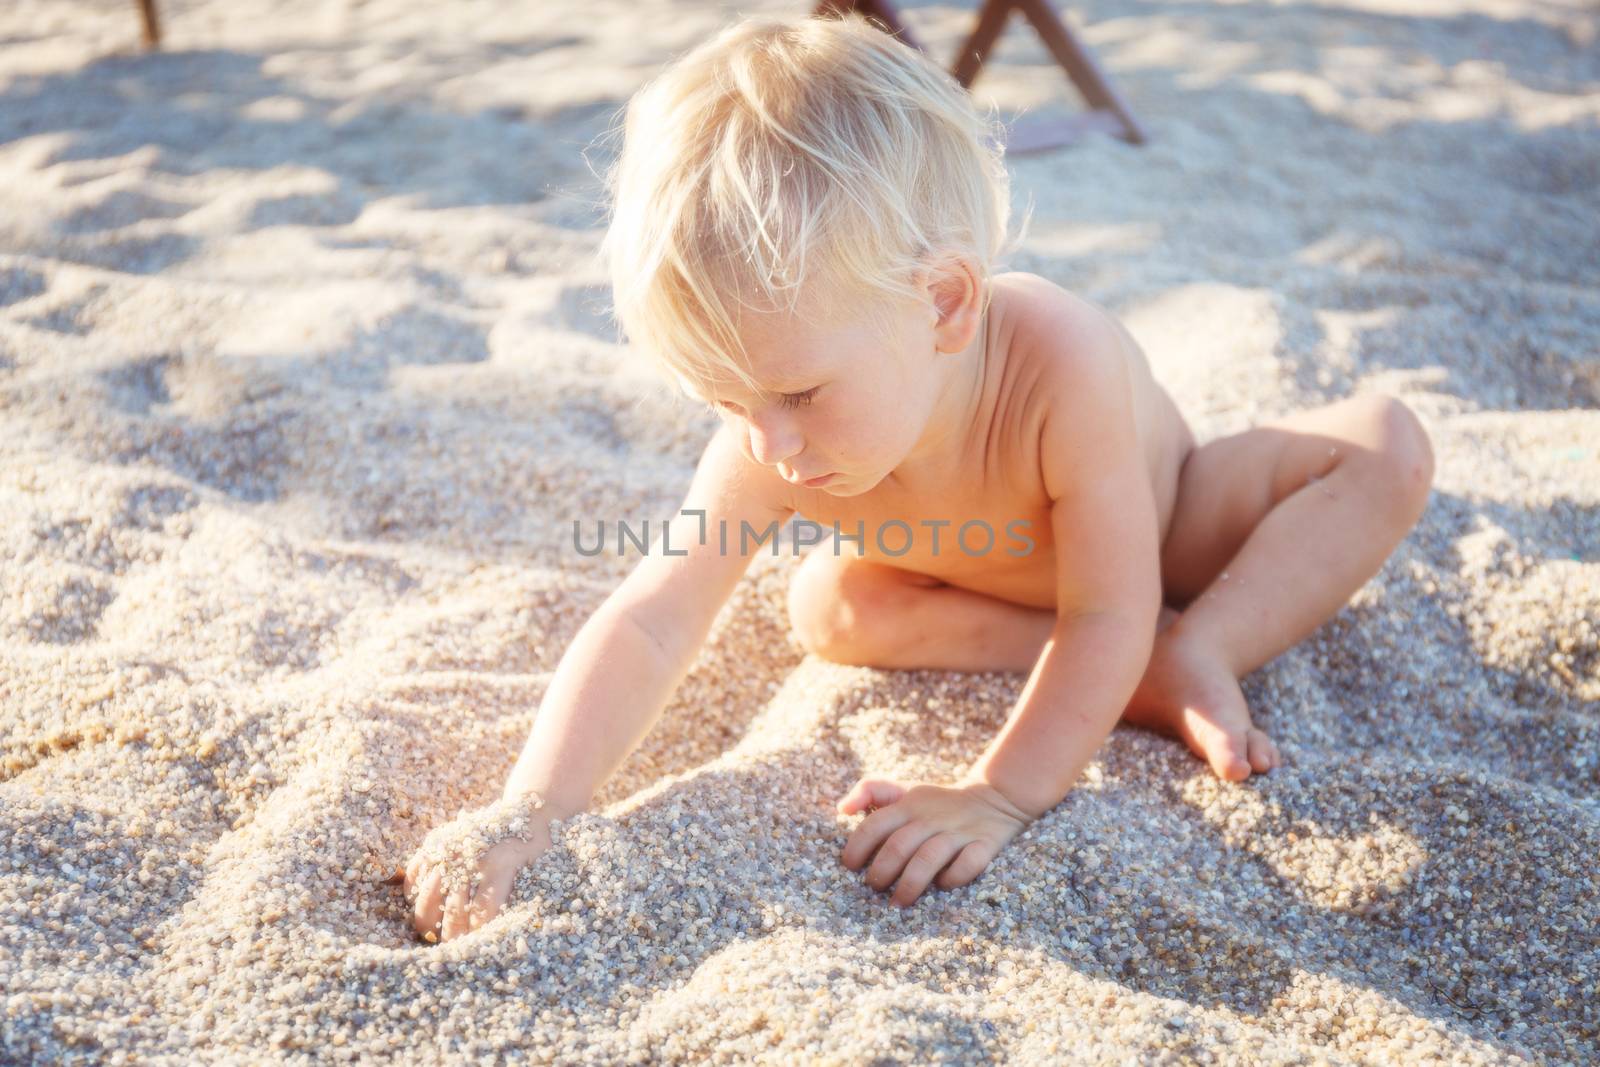 Baby on a beach by gorov108